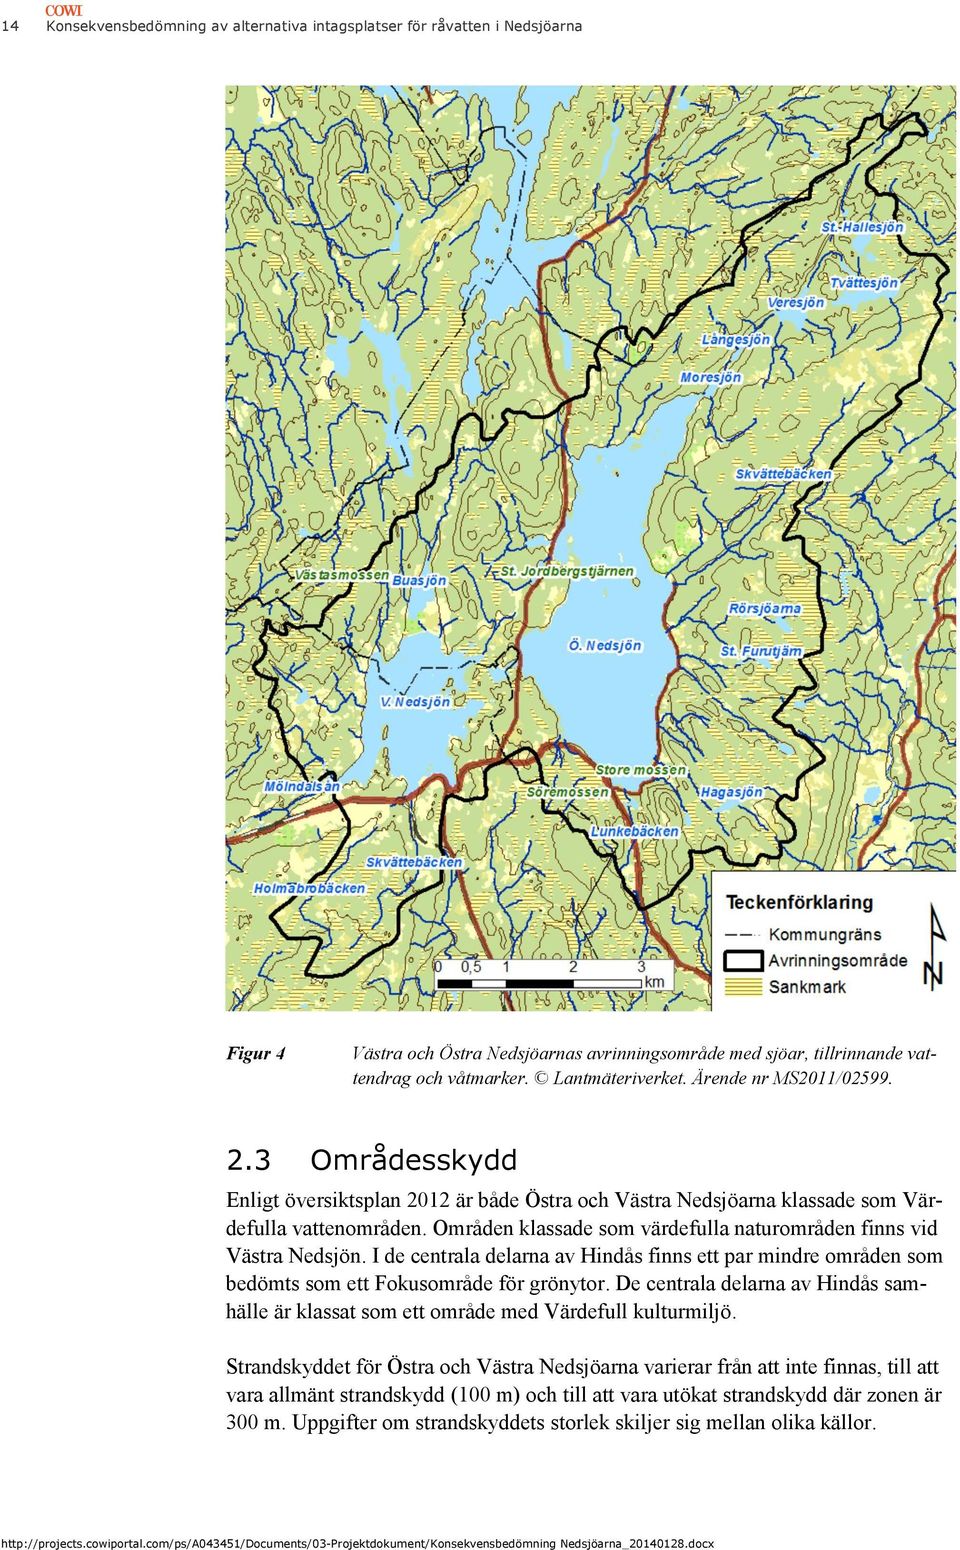 Områden klassade som värdefulla naturområden finns vid Västra Nedsjön. I de centrala delarna av Hindås finns ett par mindre områden som bedömts som ett Fokusområde för grönytor.